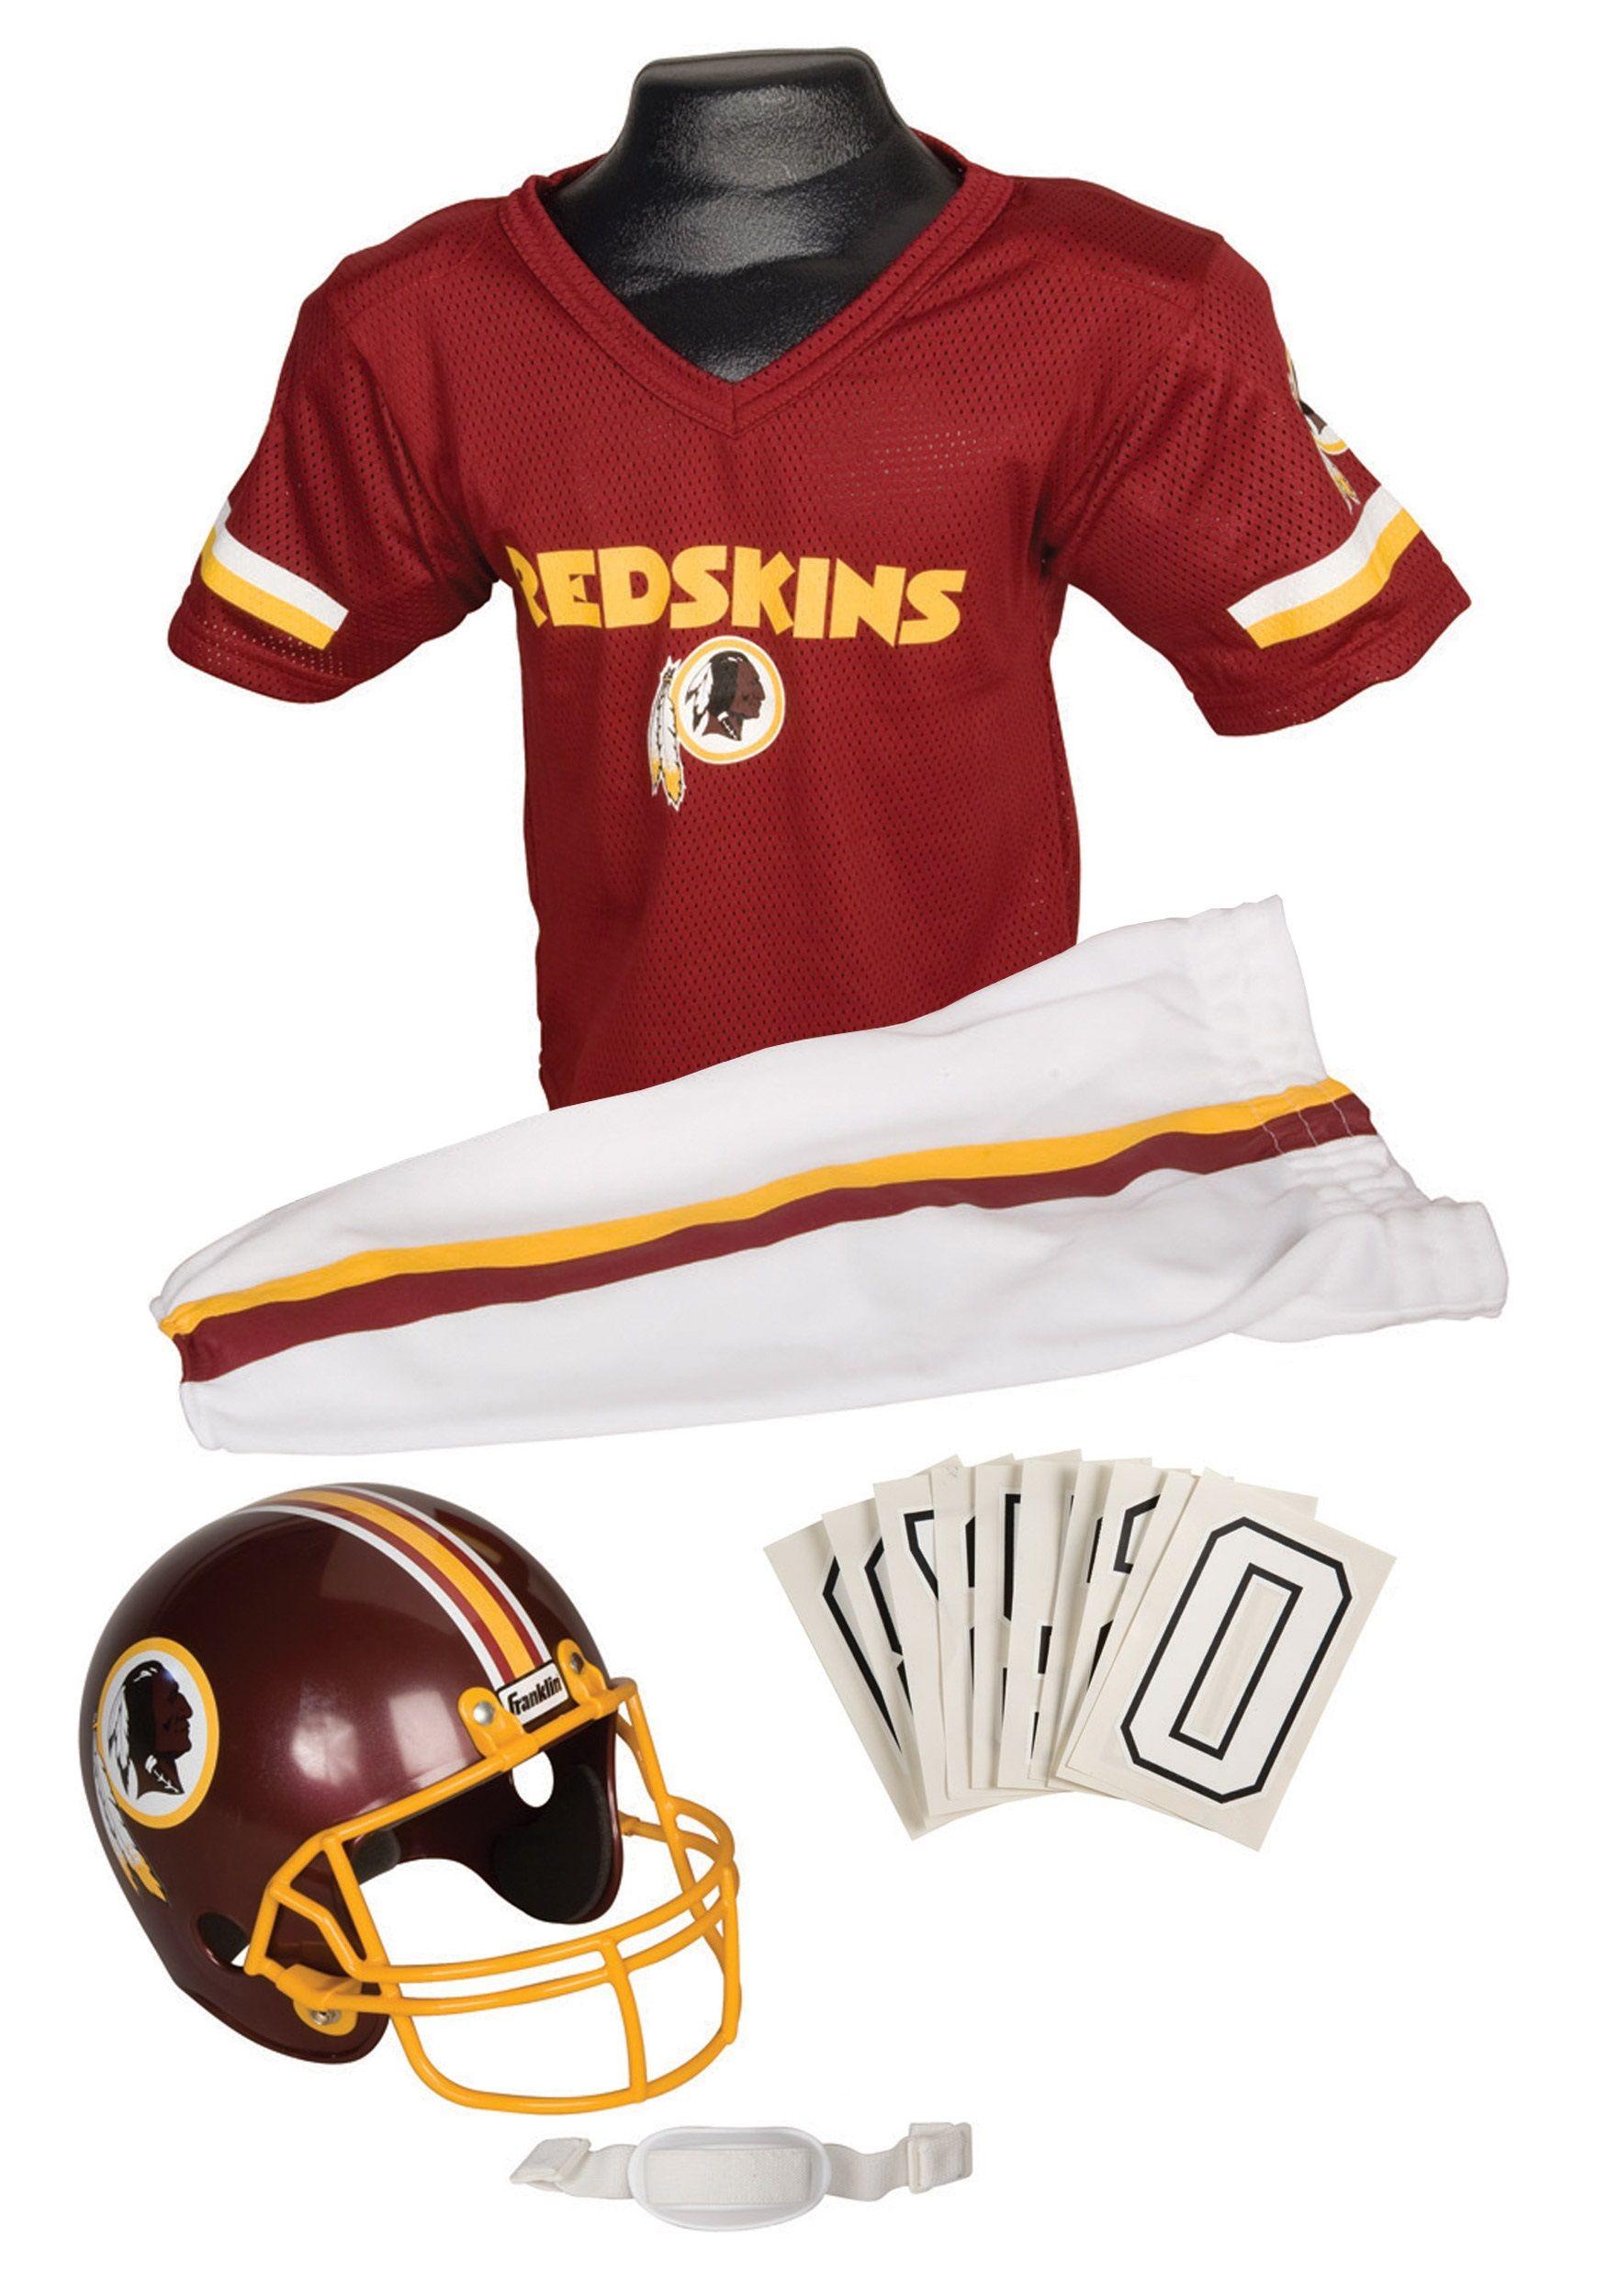 NFL Redskins Logo - Kids NFL Redskins Uniform Costume